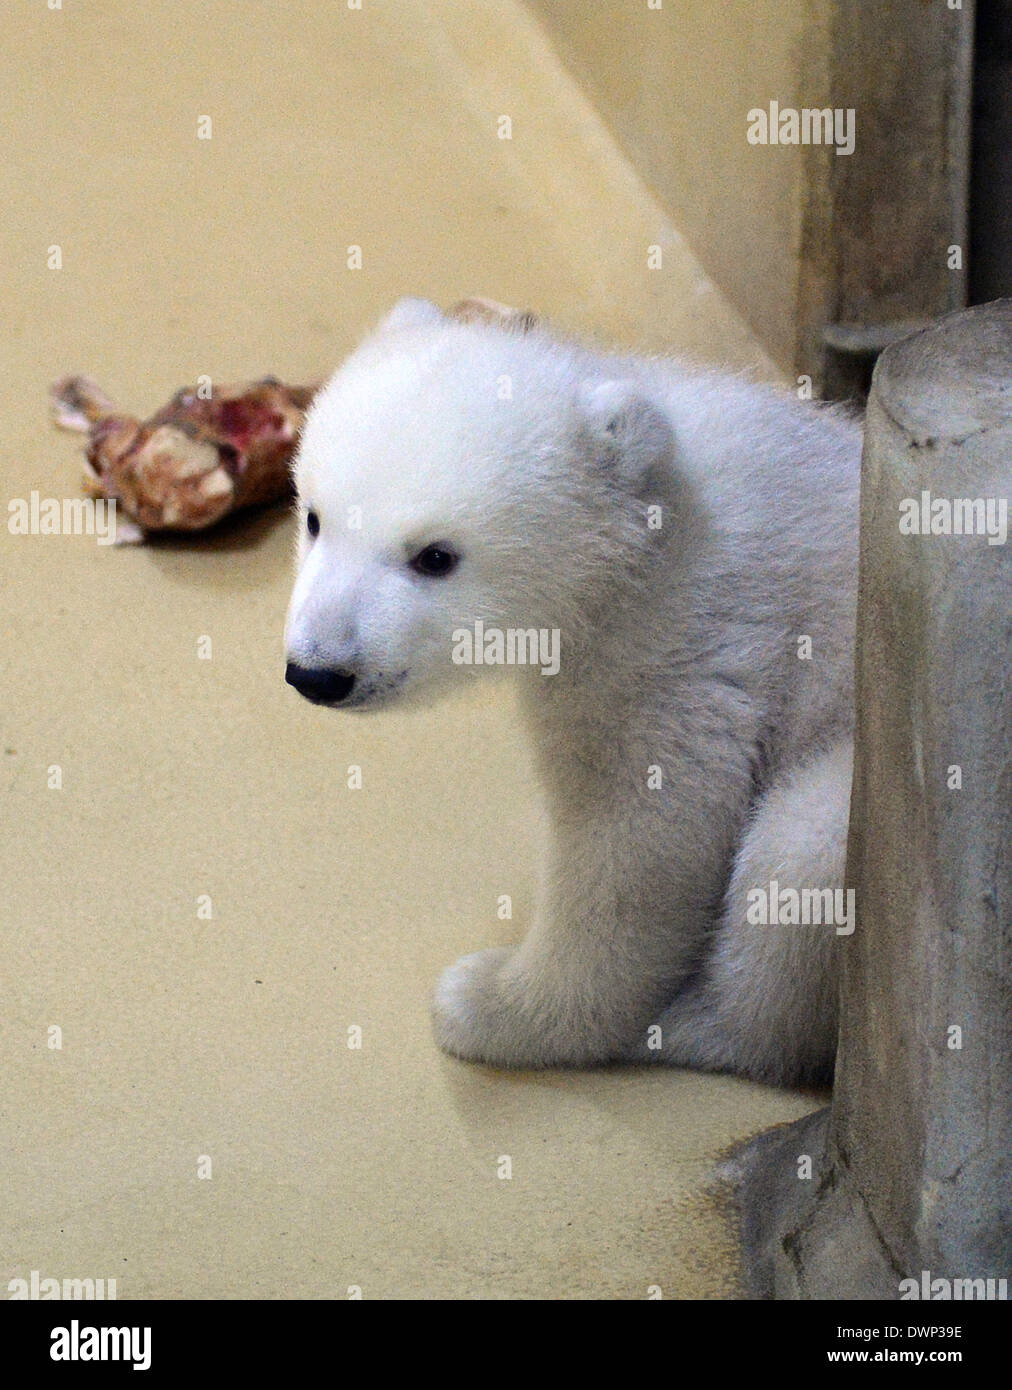 Bremerhaven, Deutschland. 12. März 2014. Ein Eisbär-Baby ist mit seinen Knochen kauen im Hintergrund abgebildet, auf der "Zoo am Meer" (lit.) Zoo am Meer) in Bremerhaven, Deutschland, 12. März 2014. Die weiblichen Polar Bear Cub wurde am 16. Dezember 2013 geboren und jetzt lässt seine Geburt Höhle zum ersten Mal. Foto: CARMEN JASPERSEN/Dpa/Alamy Live News Stockfoto